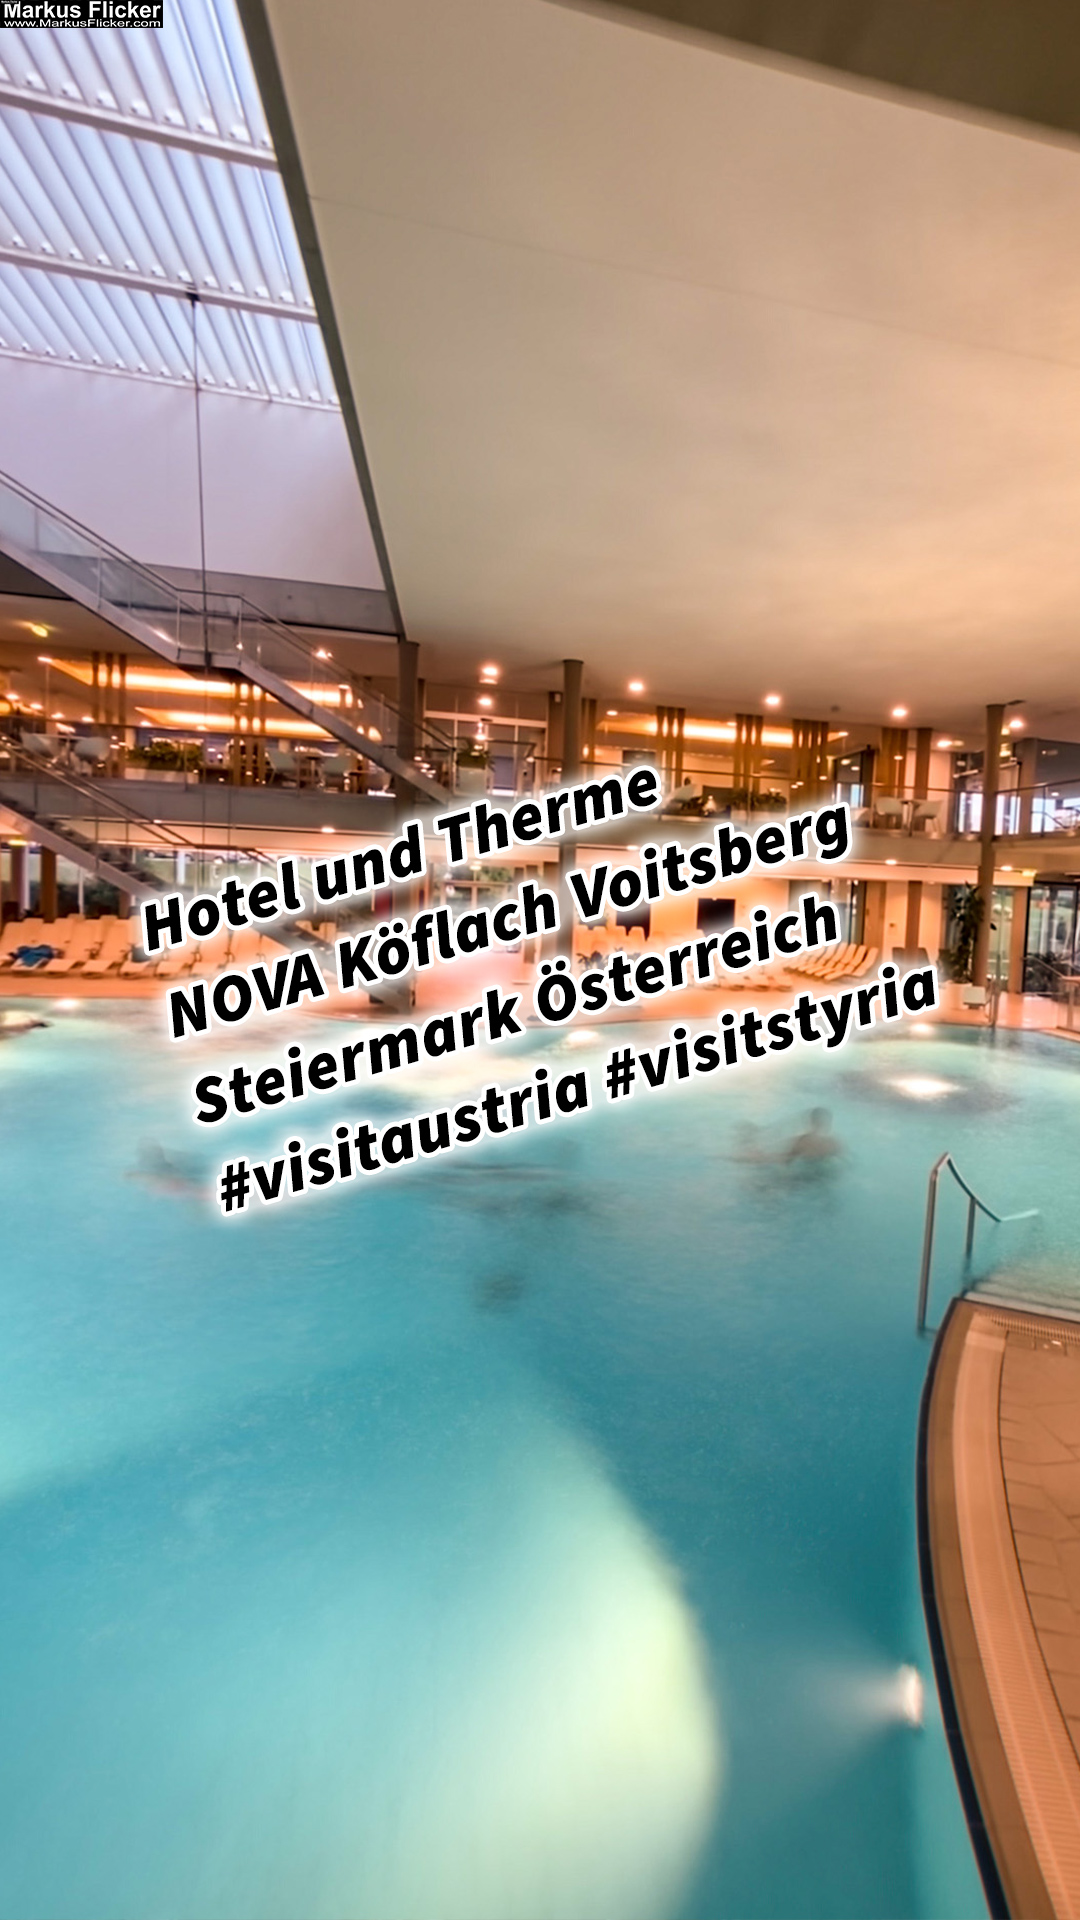 Hotel und Therme NOVA Köflach Voitsberg Steiermark Österreich #visitaustria #visitstyria #spüredeineseelelächeln #hotelundthermenova